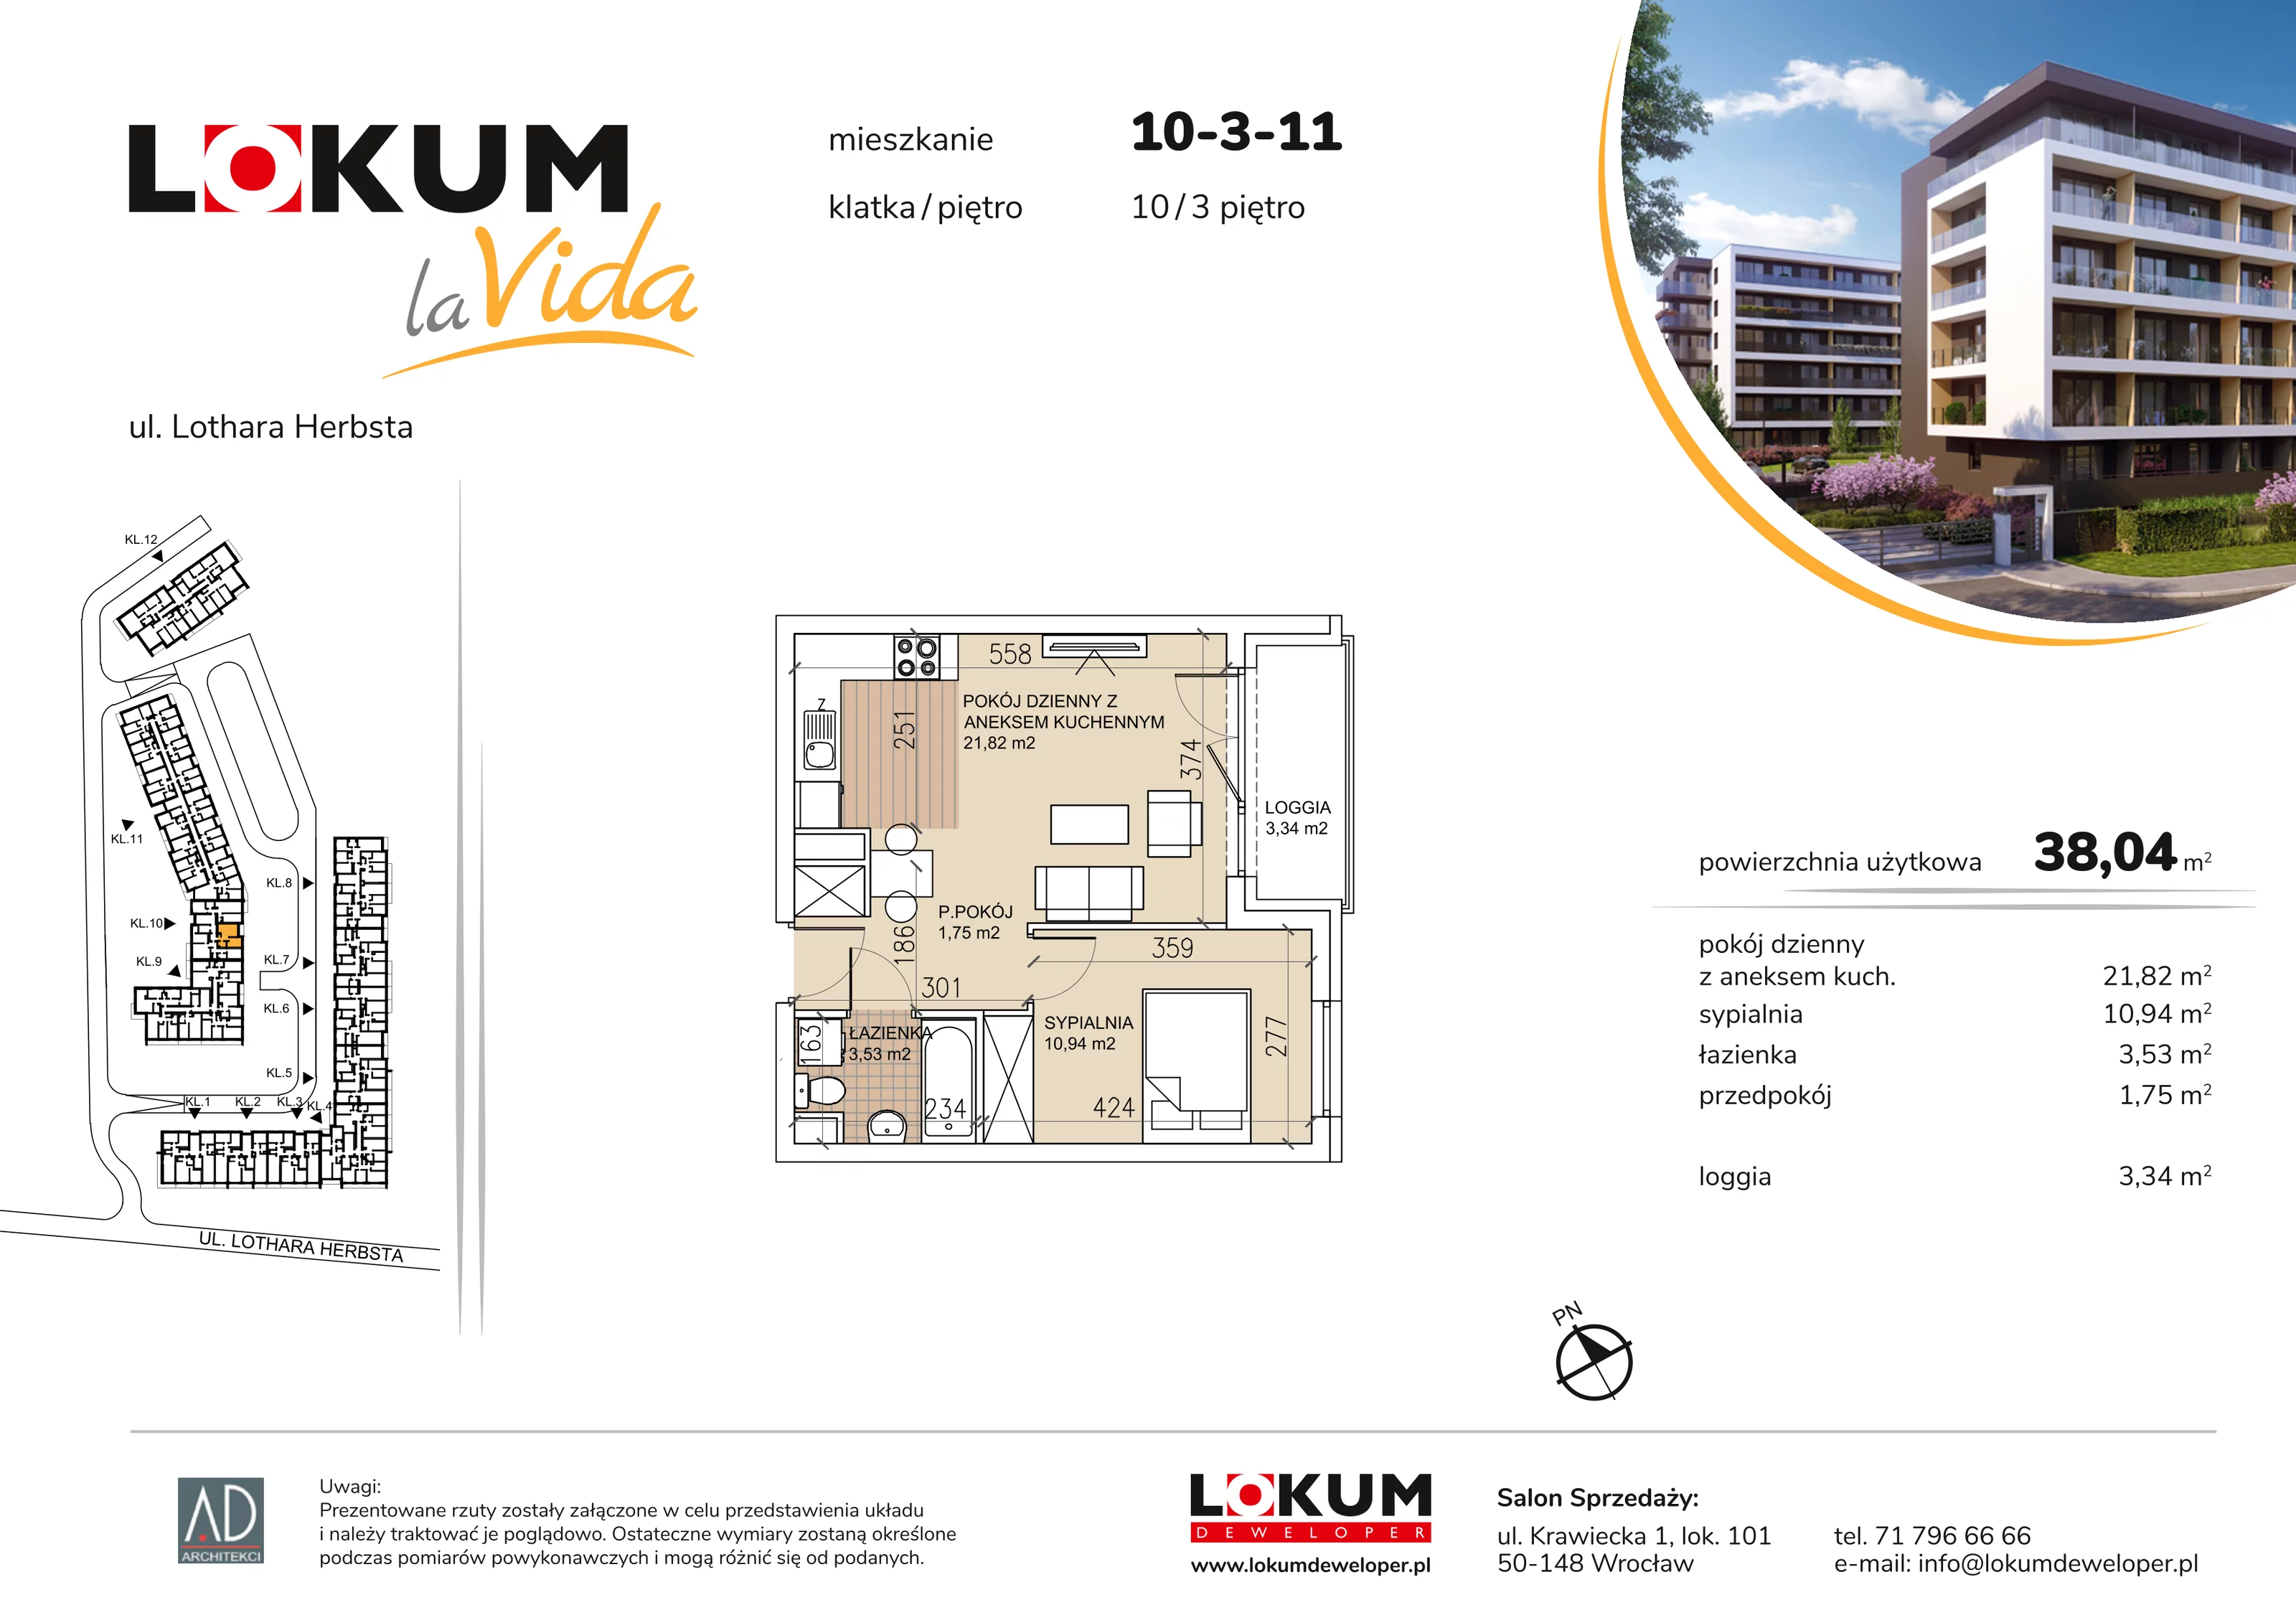 Mieszkanie 38,04 m², piętro 3, oferta nr 10-3-11, Lokum la Vida, Wrocław, Sołtysowice, ul. Lothara Herbsta